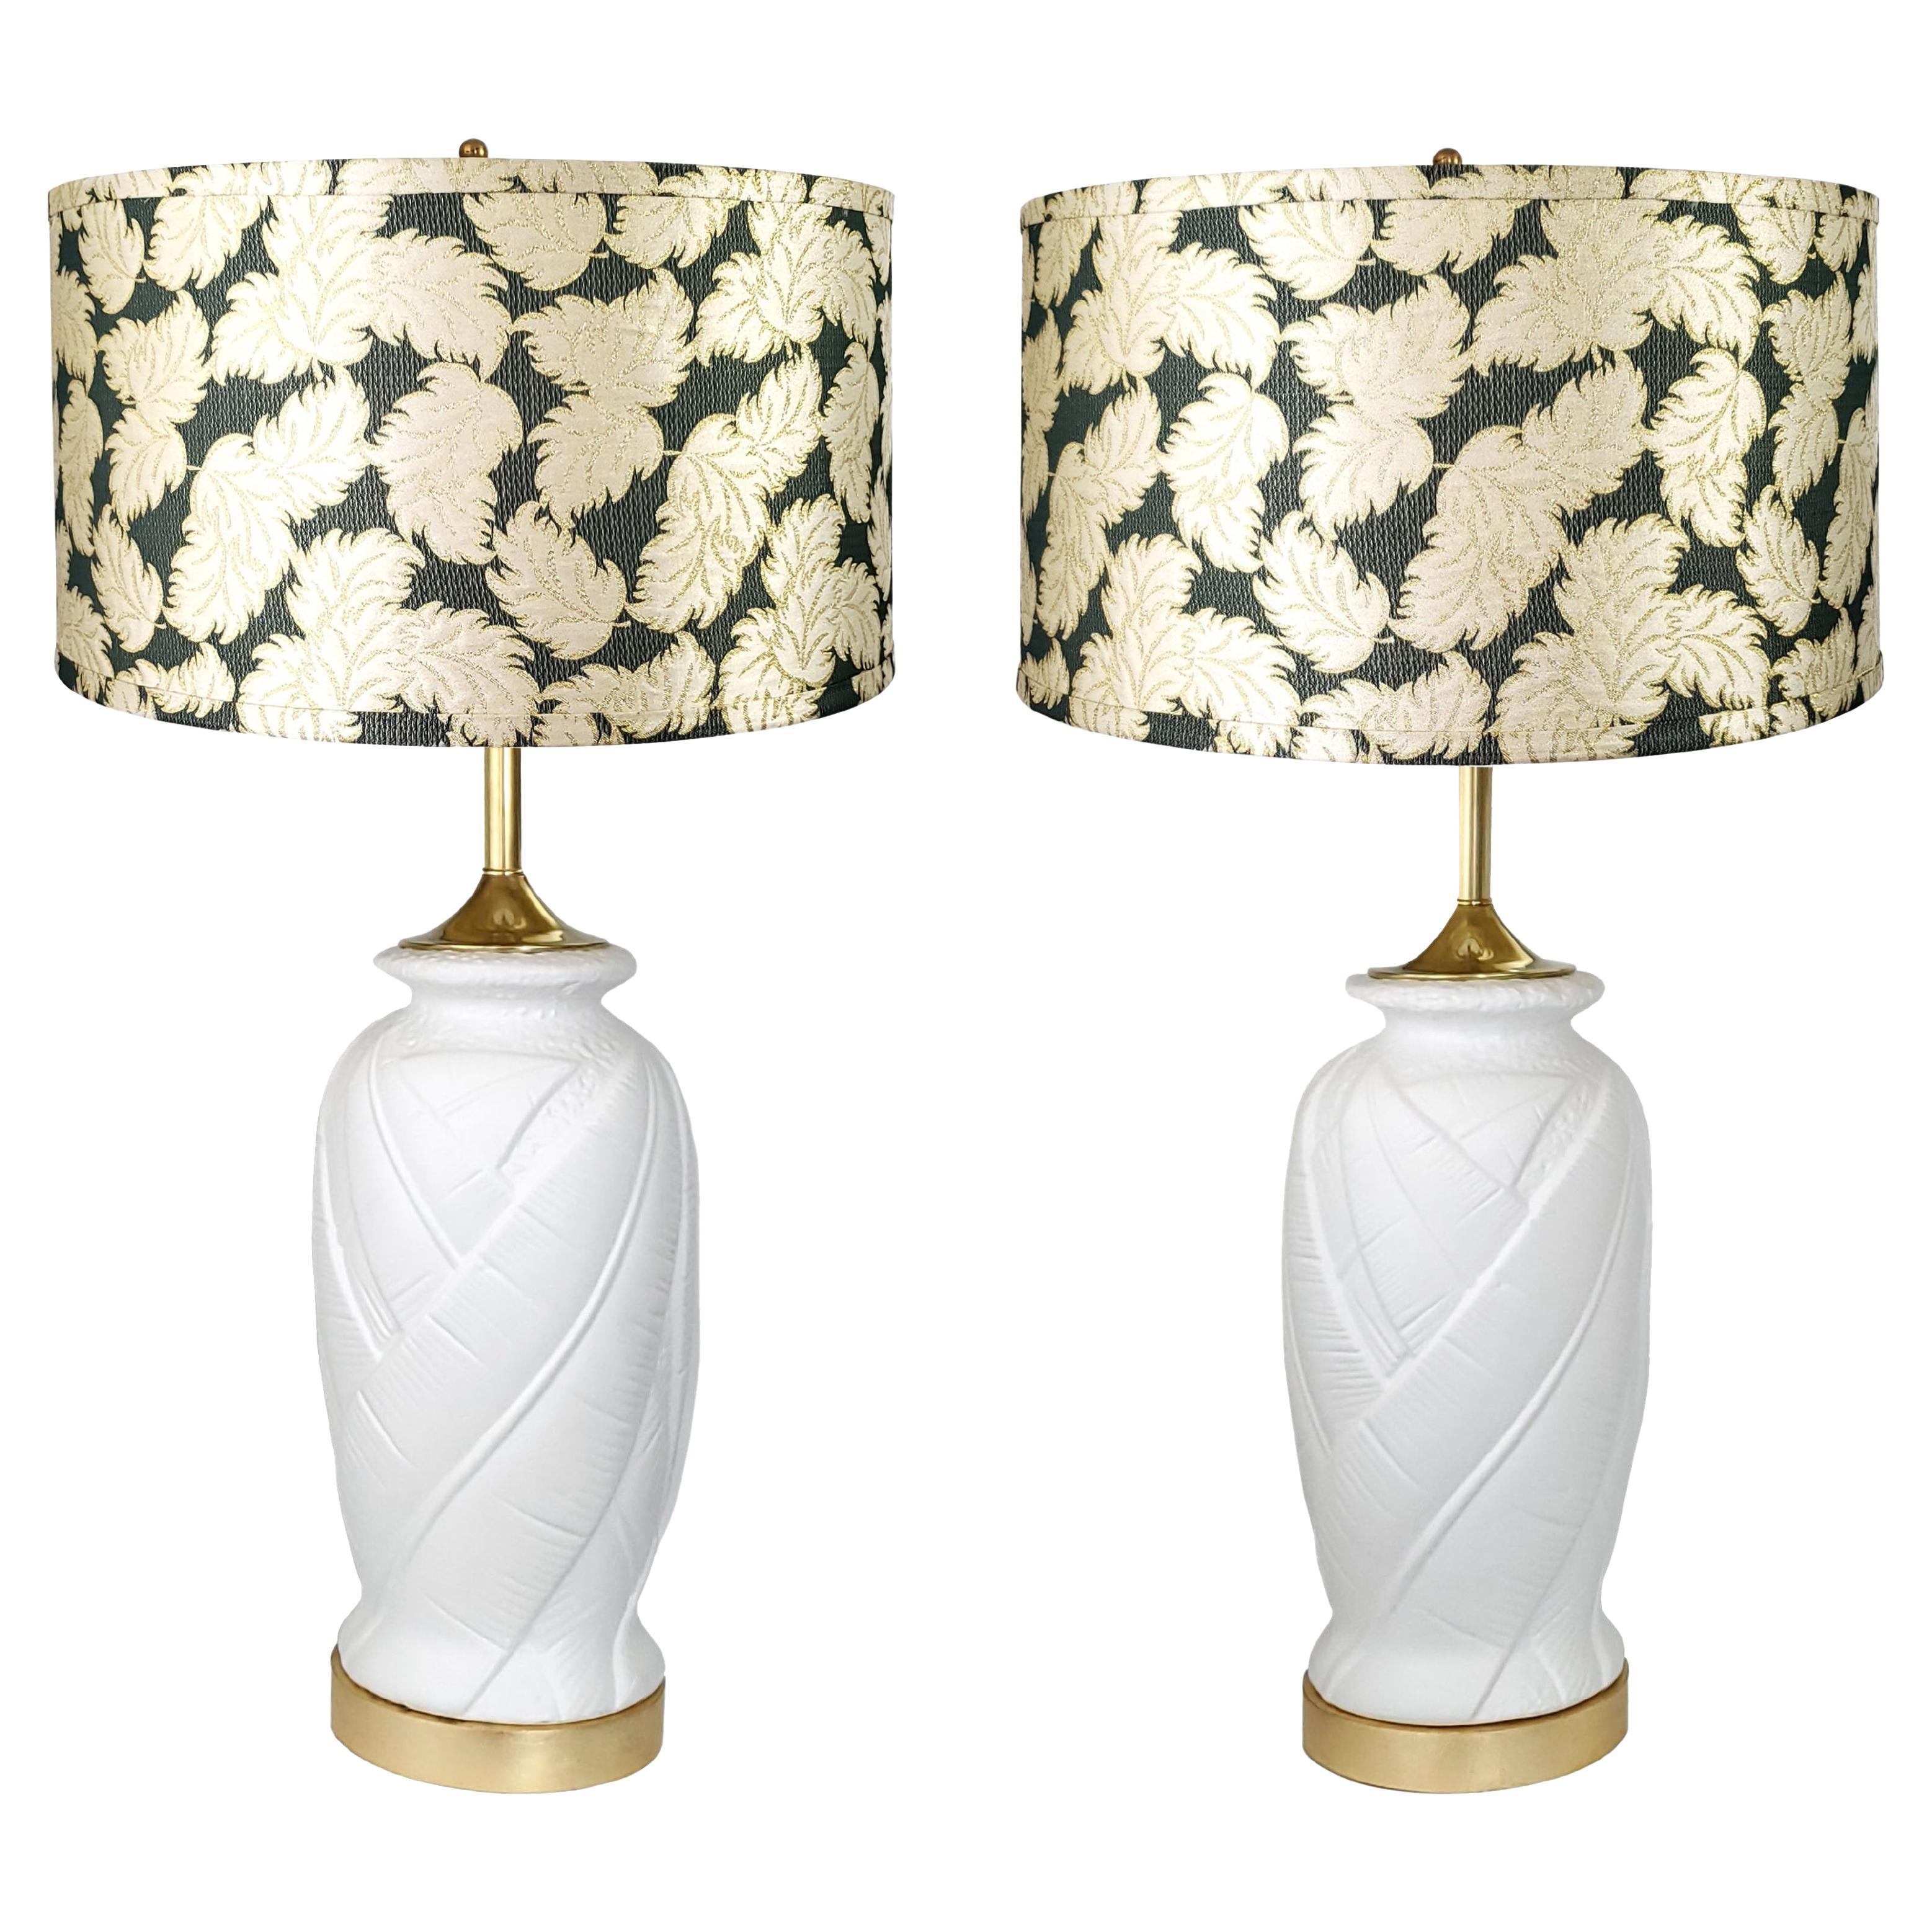 Paar weiße Vintage-Tischlampen aus Gips mit Palmblattmuster und Vintage-Trommellampenschirmen